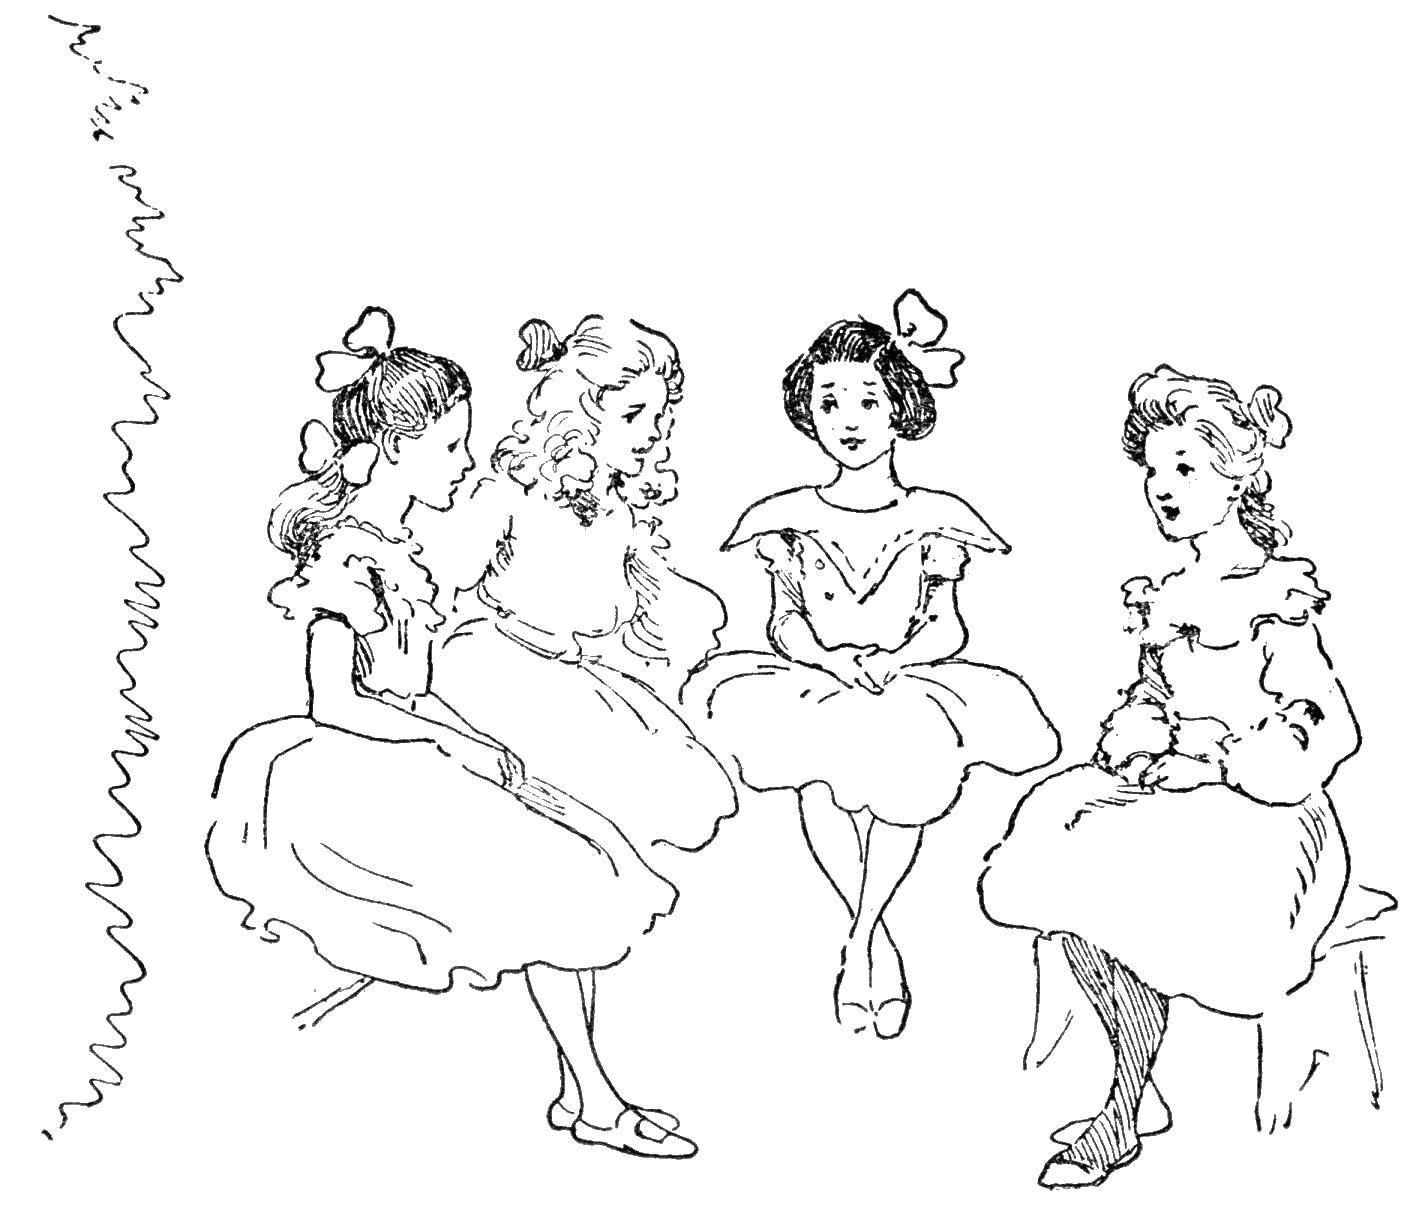 Название: Раскраска Маленькие принцессы. Категория: Принцессы. Теги: принцессы, девочки.